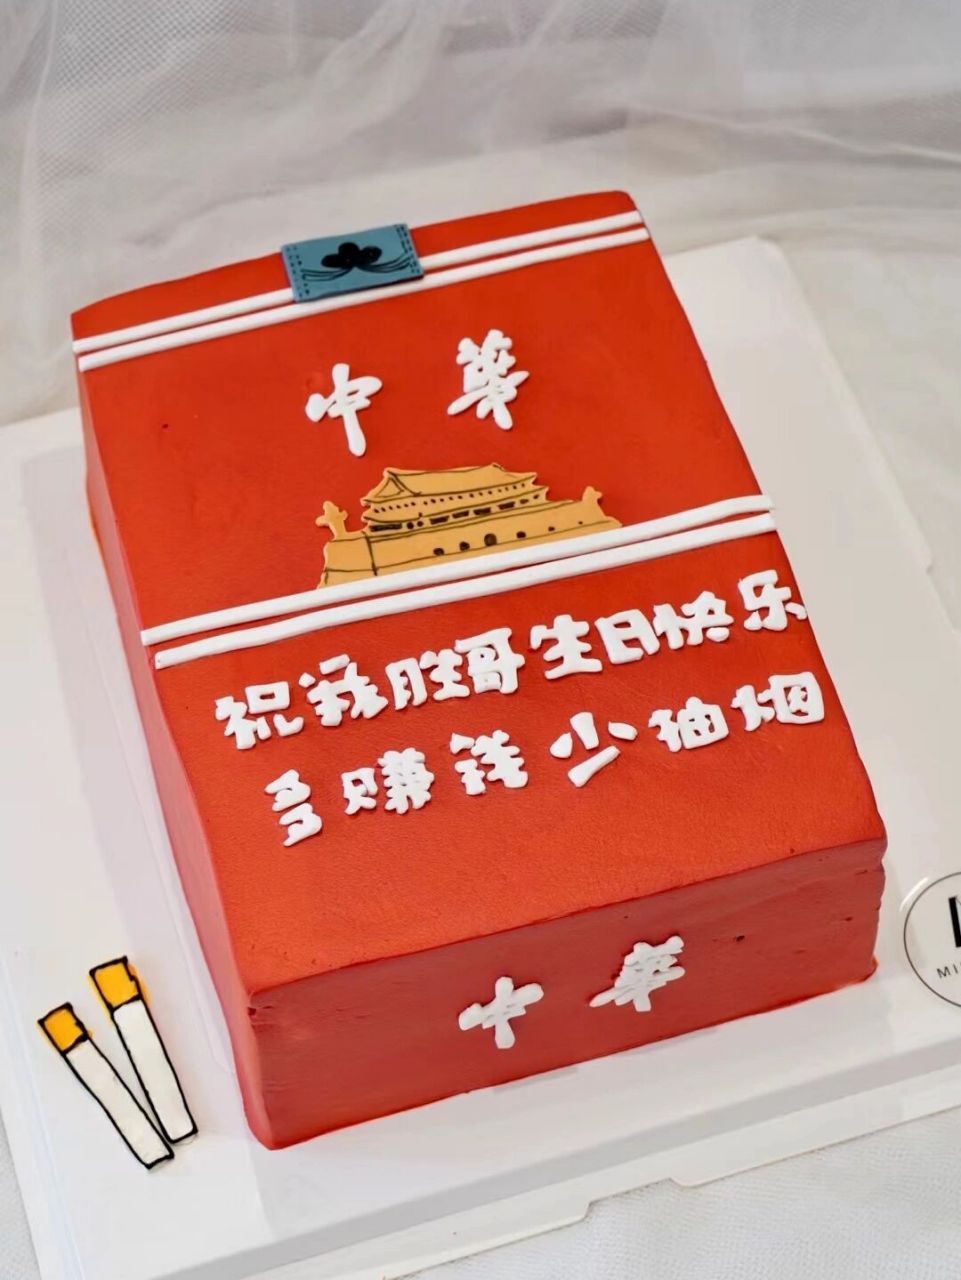 中华烟生日蛋糕图片